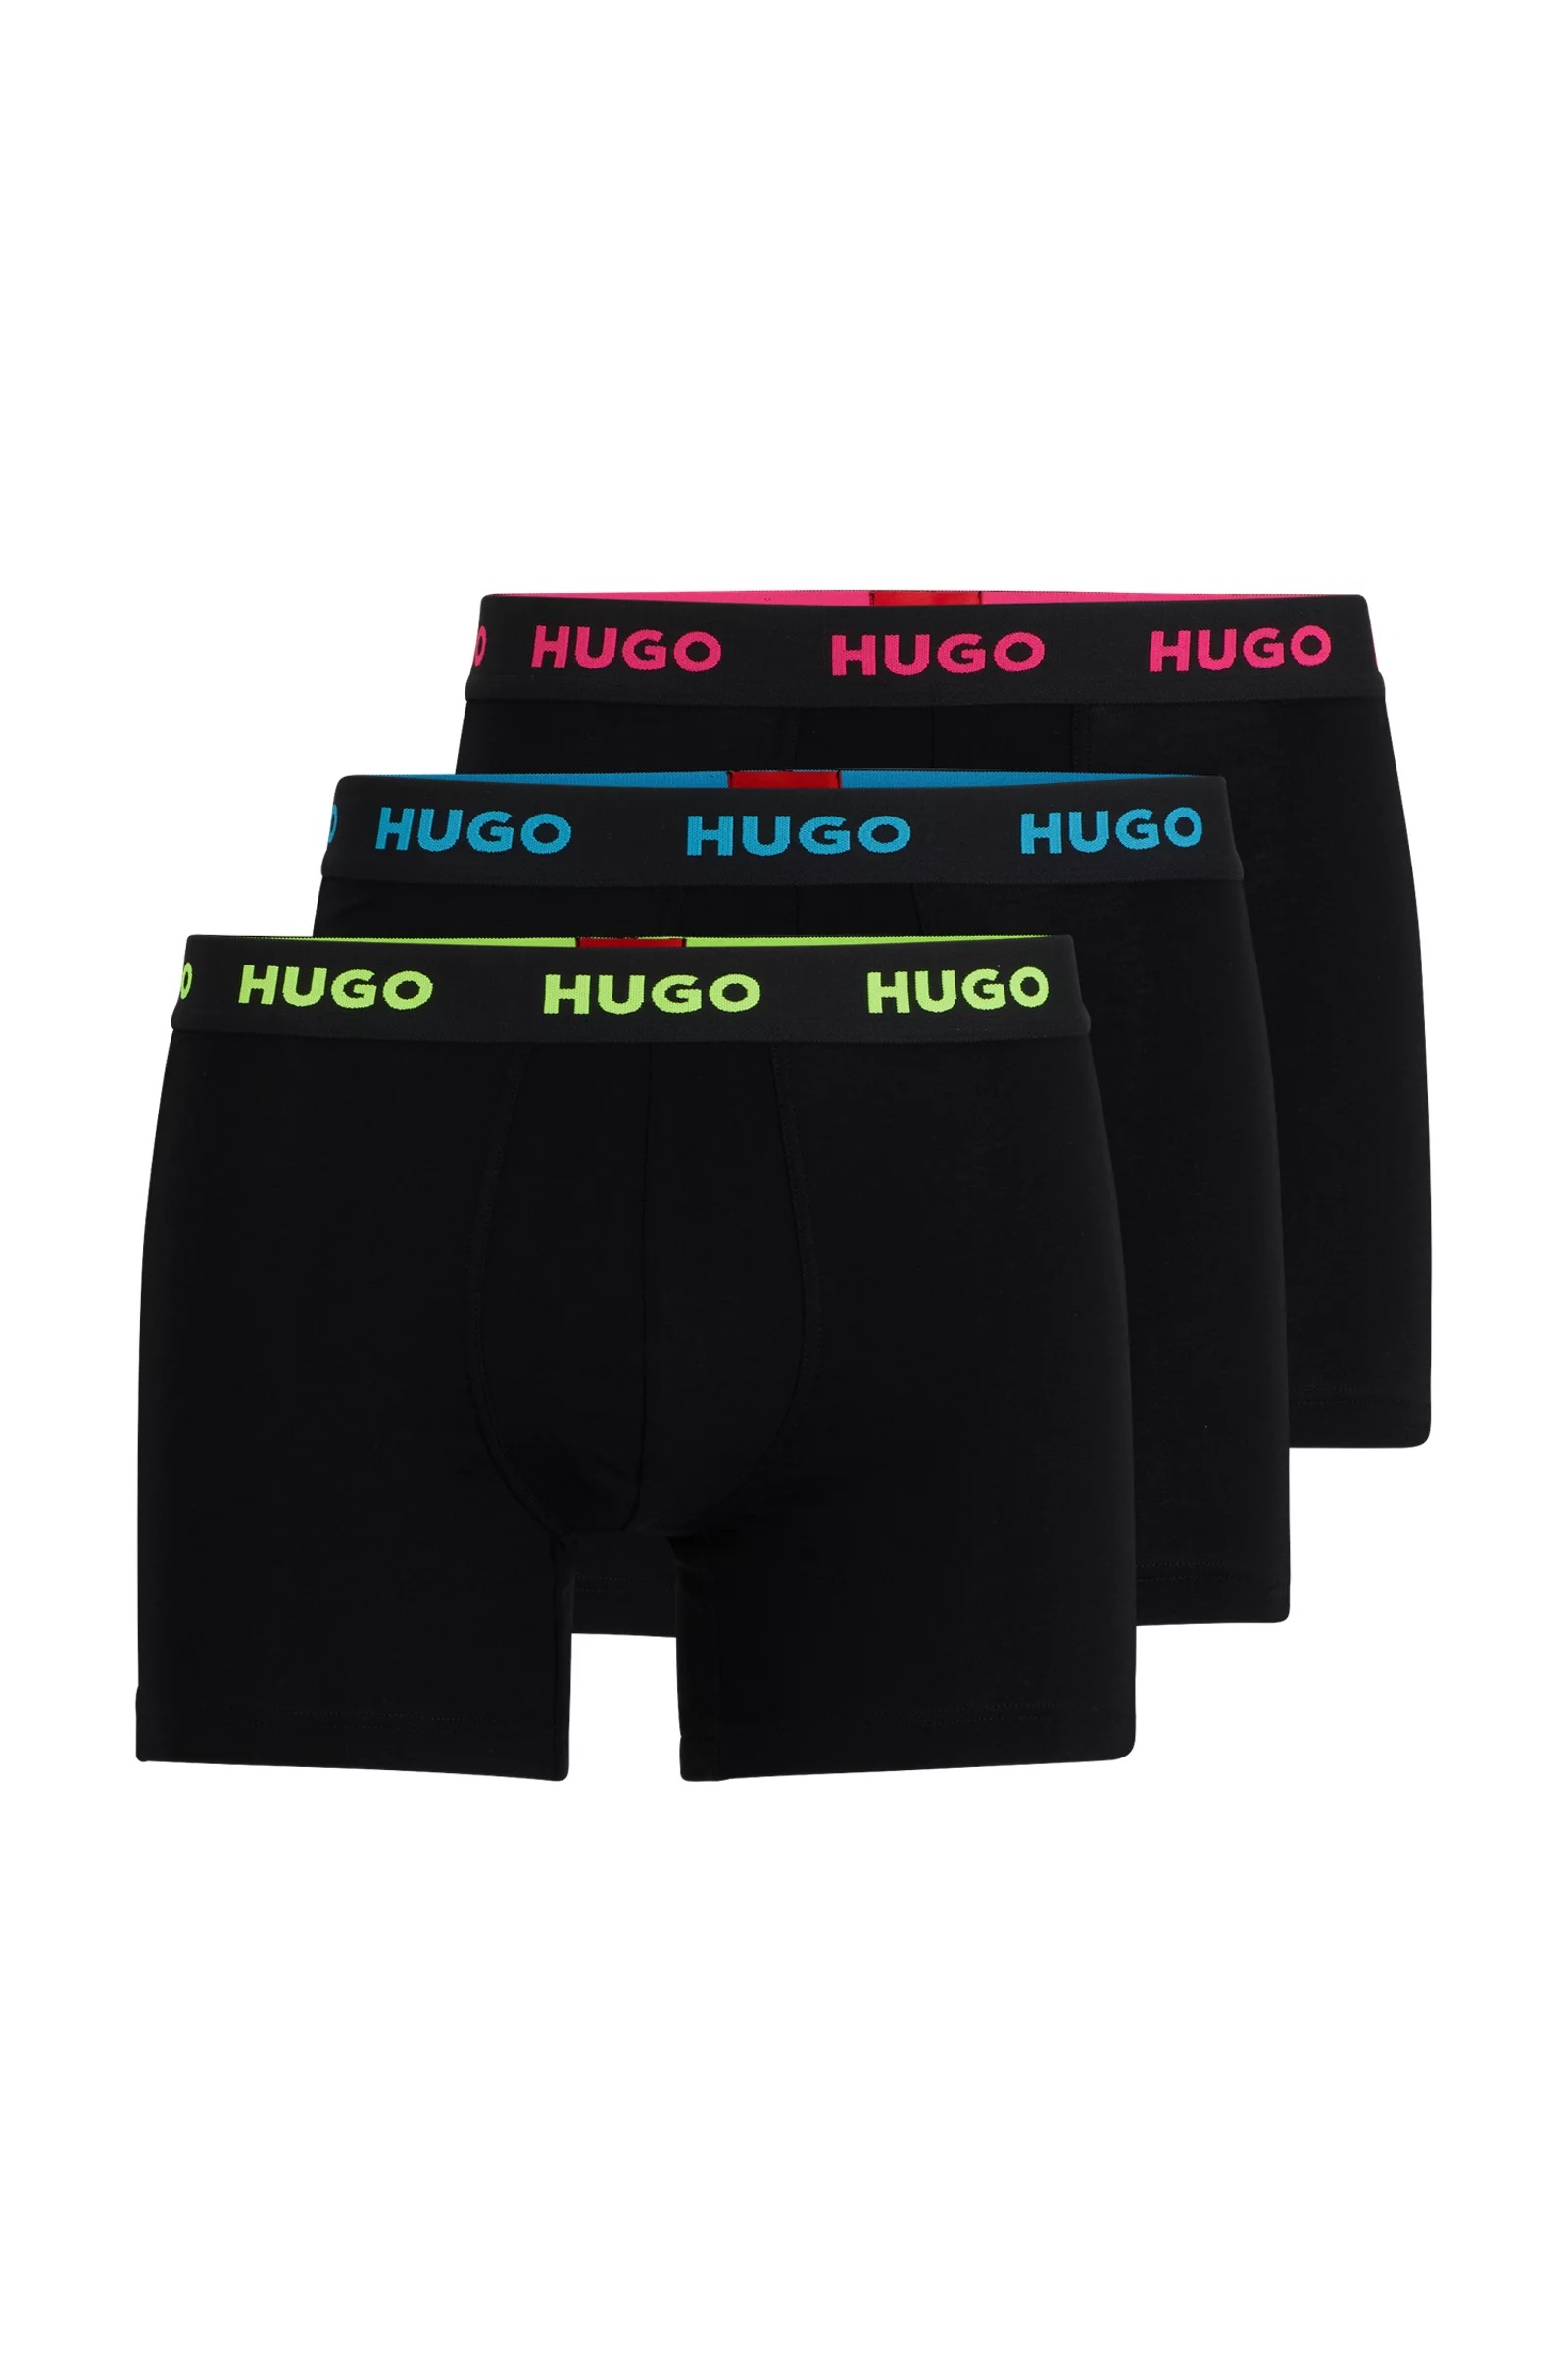 Комплект боксеров Hugo Three-pack Of Stretch-cotton Briefs With Logo, 3 предмета, мультиколор набор из пяти боксеров с разноцветным логотипом hugo цвет medium blue